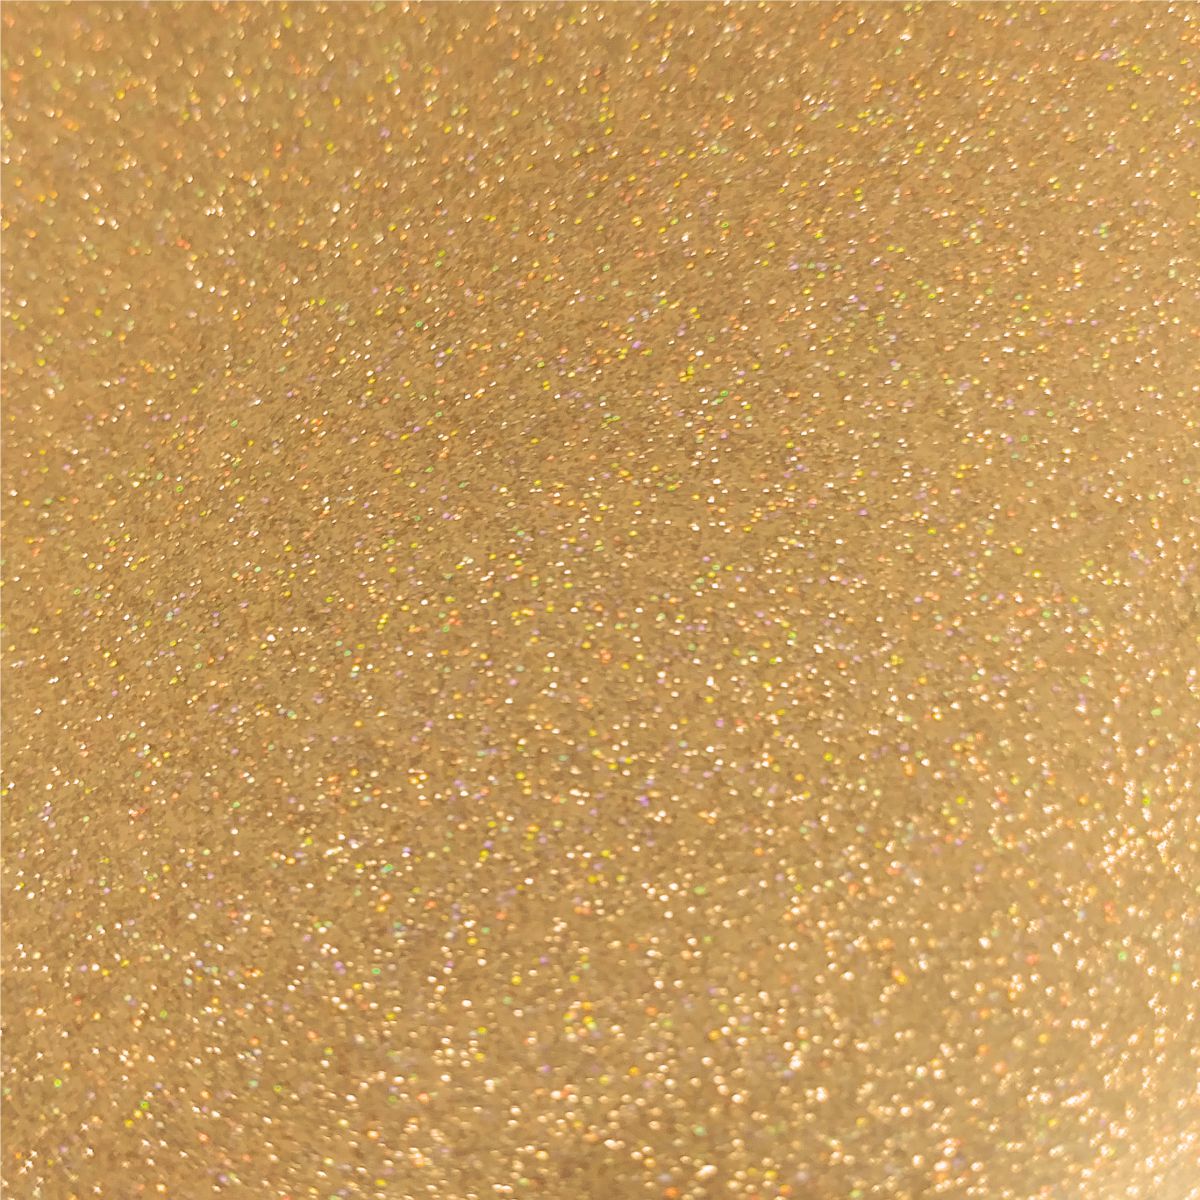 StyleTech Transparent Glitter Sunset Gold - CraftCutterSupply.com